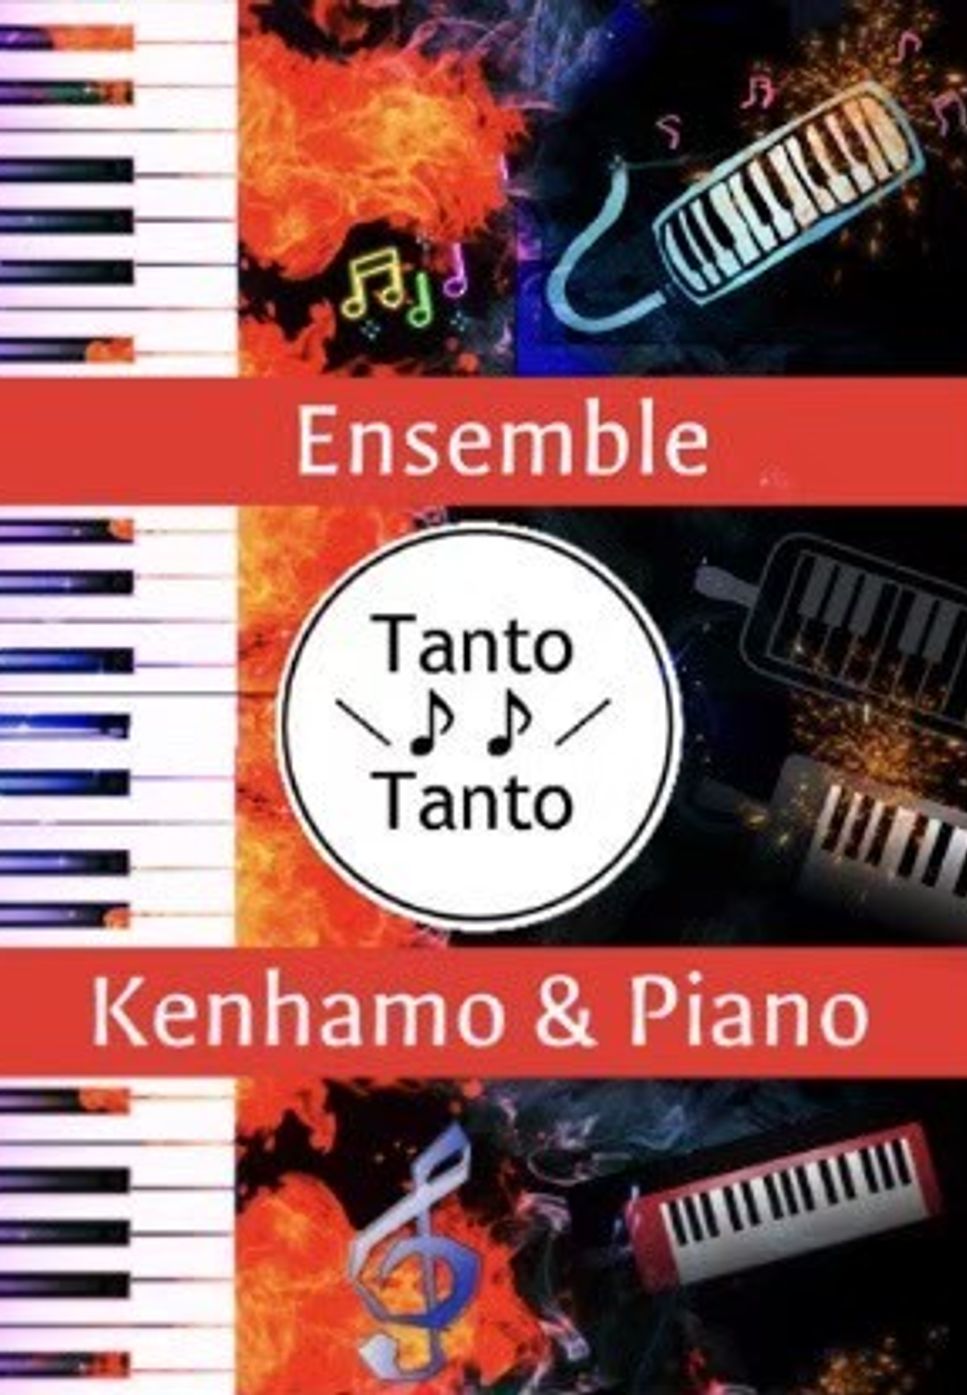 Superfly - 愛をこめて花束を (中上級 Kenhamo & Piano Ensemble in G→A) by Tanto Tanto